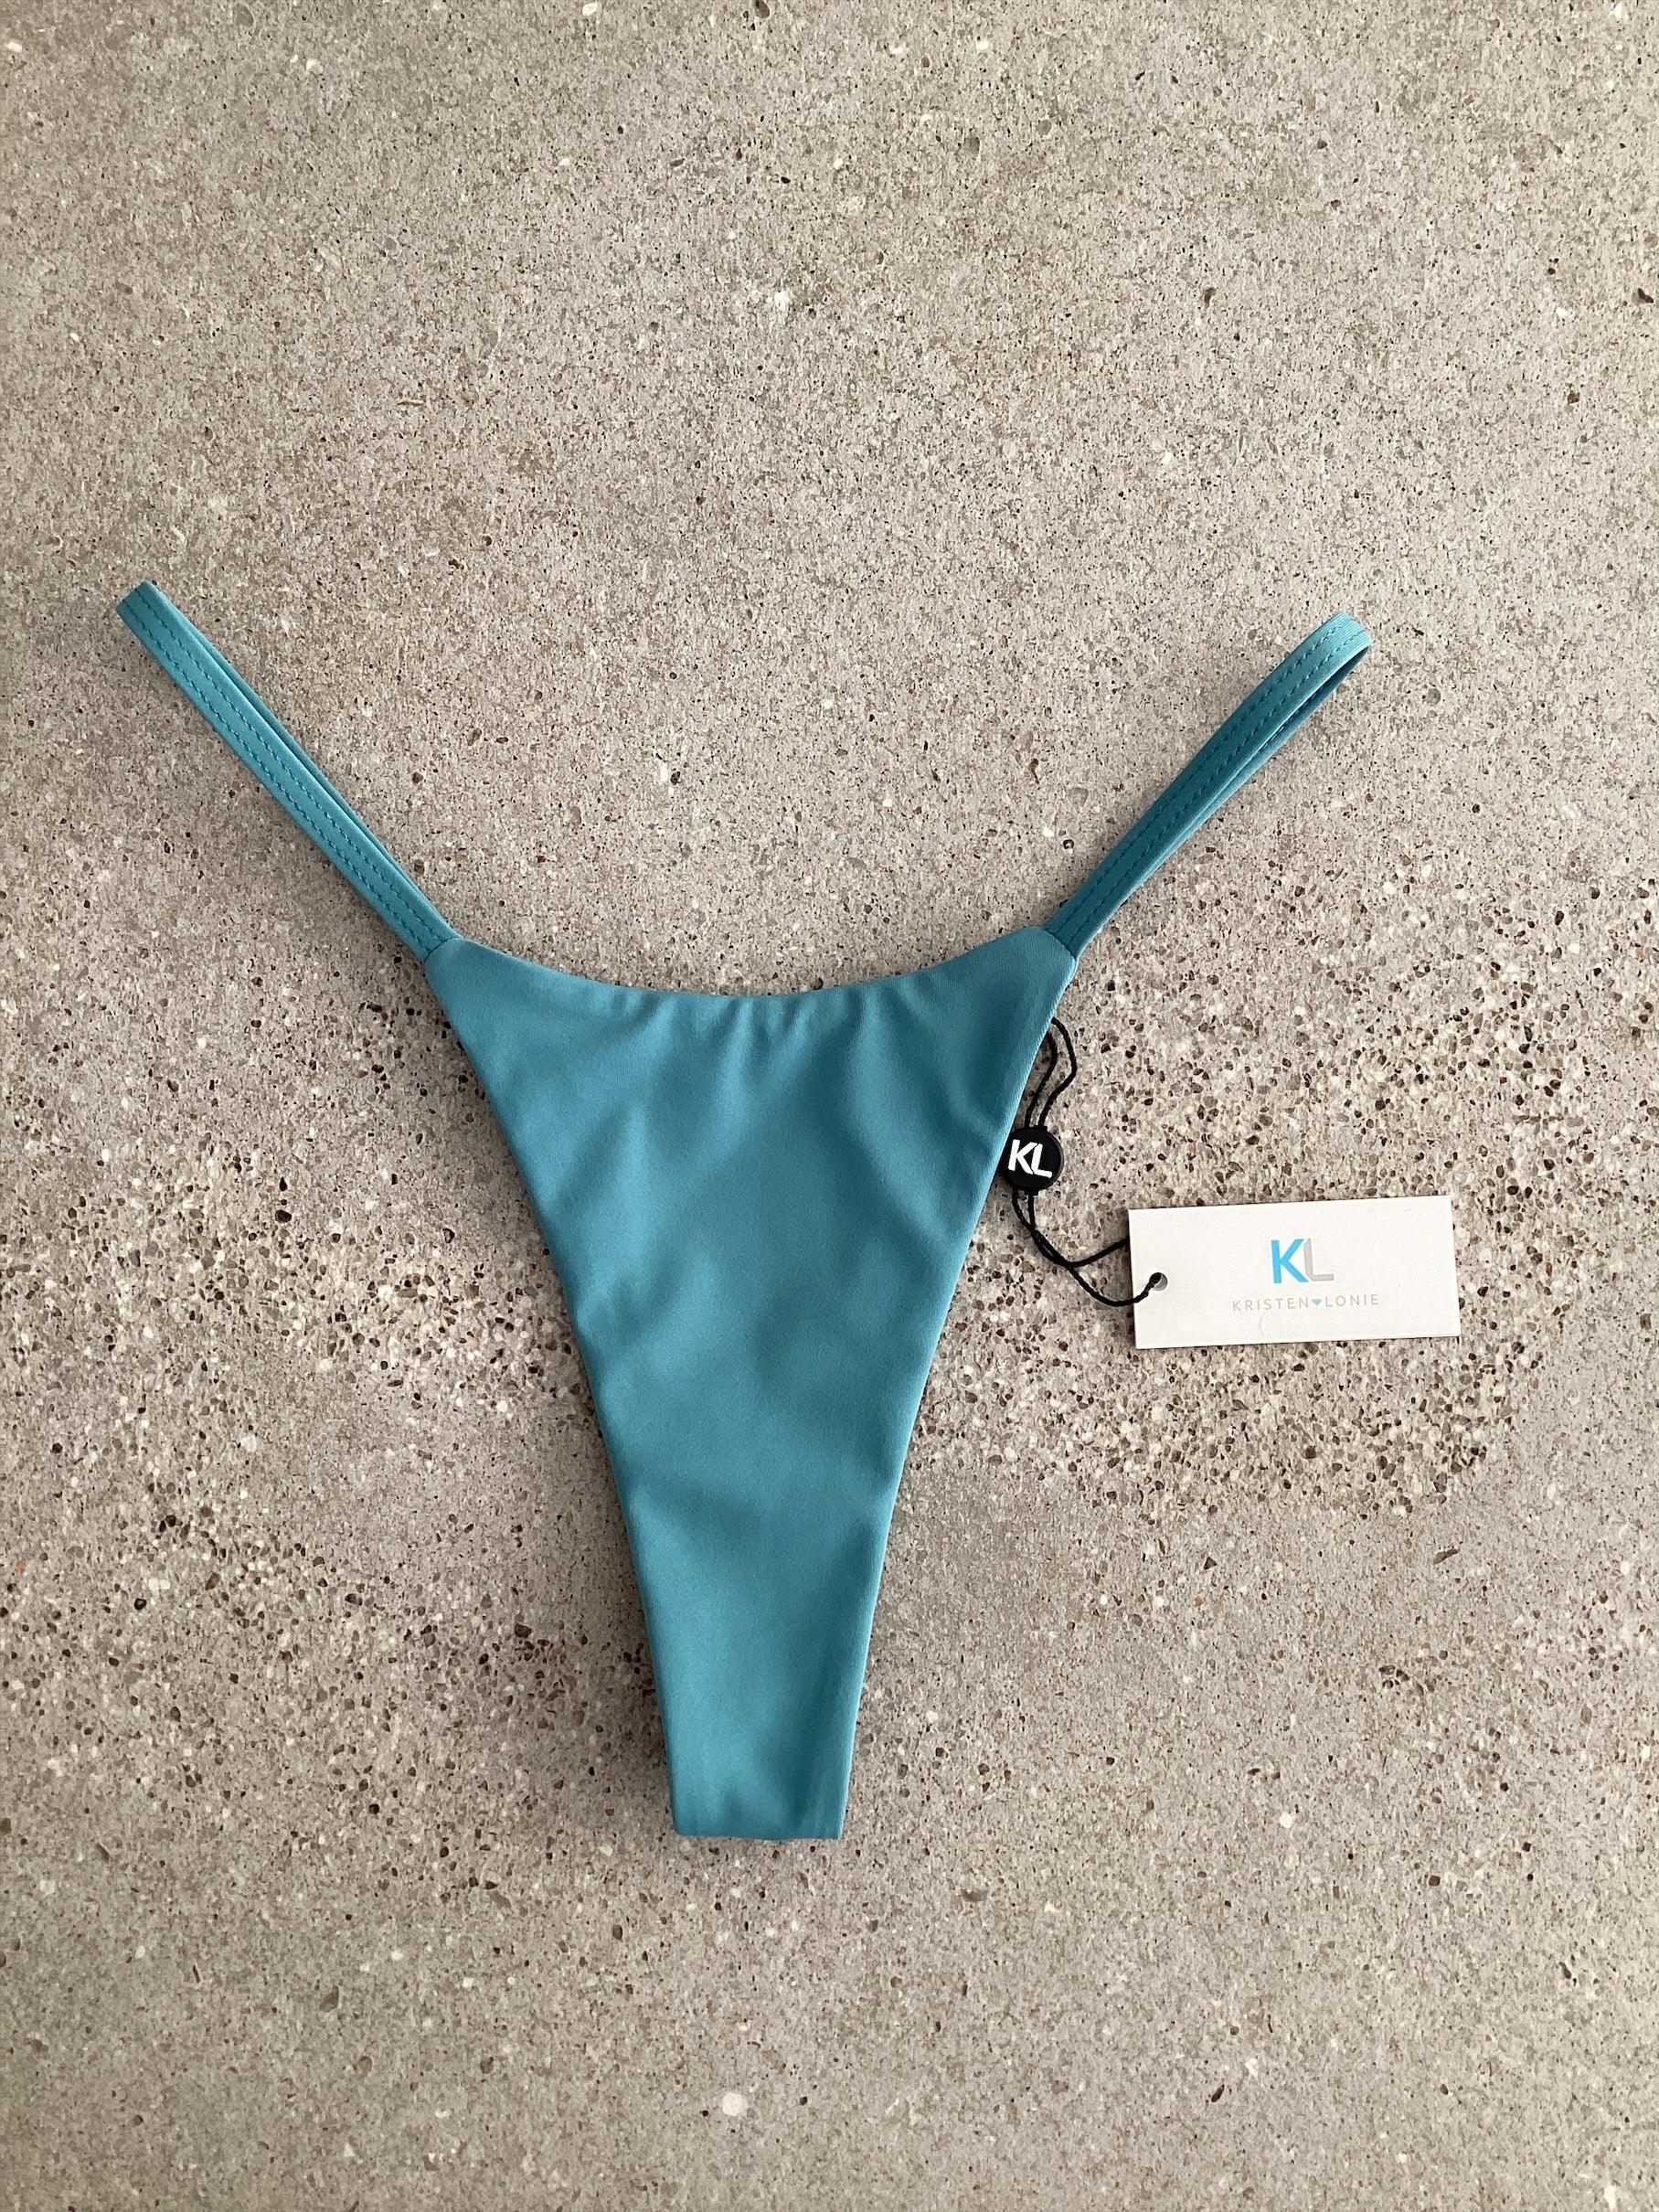 Pistachio Bikini Bottom - Kristen Lonie Swimwear